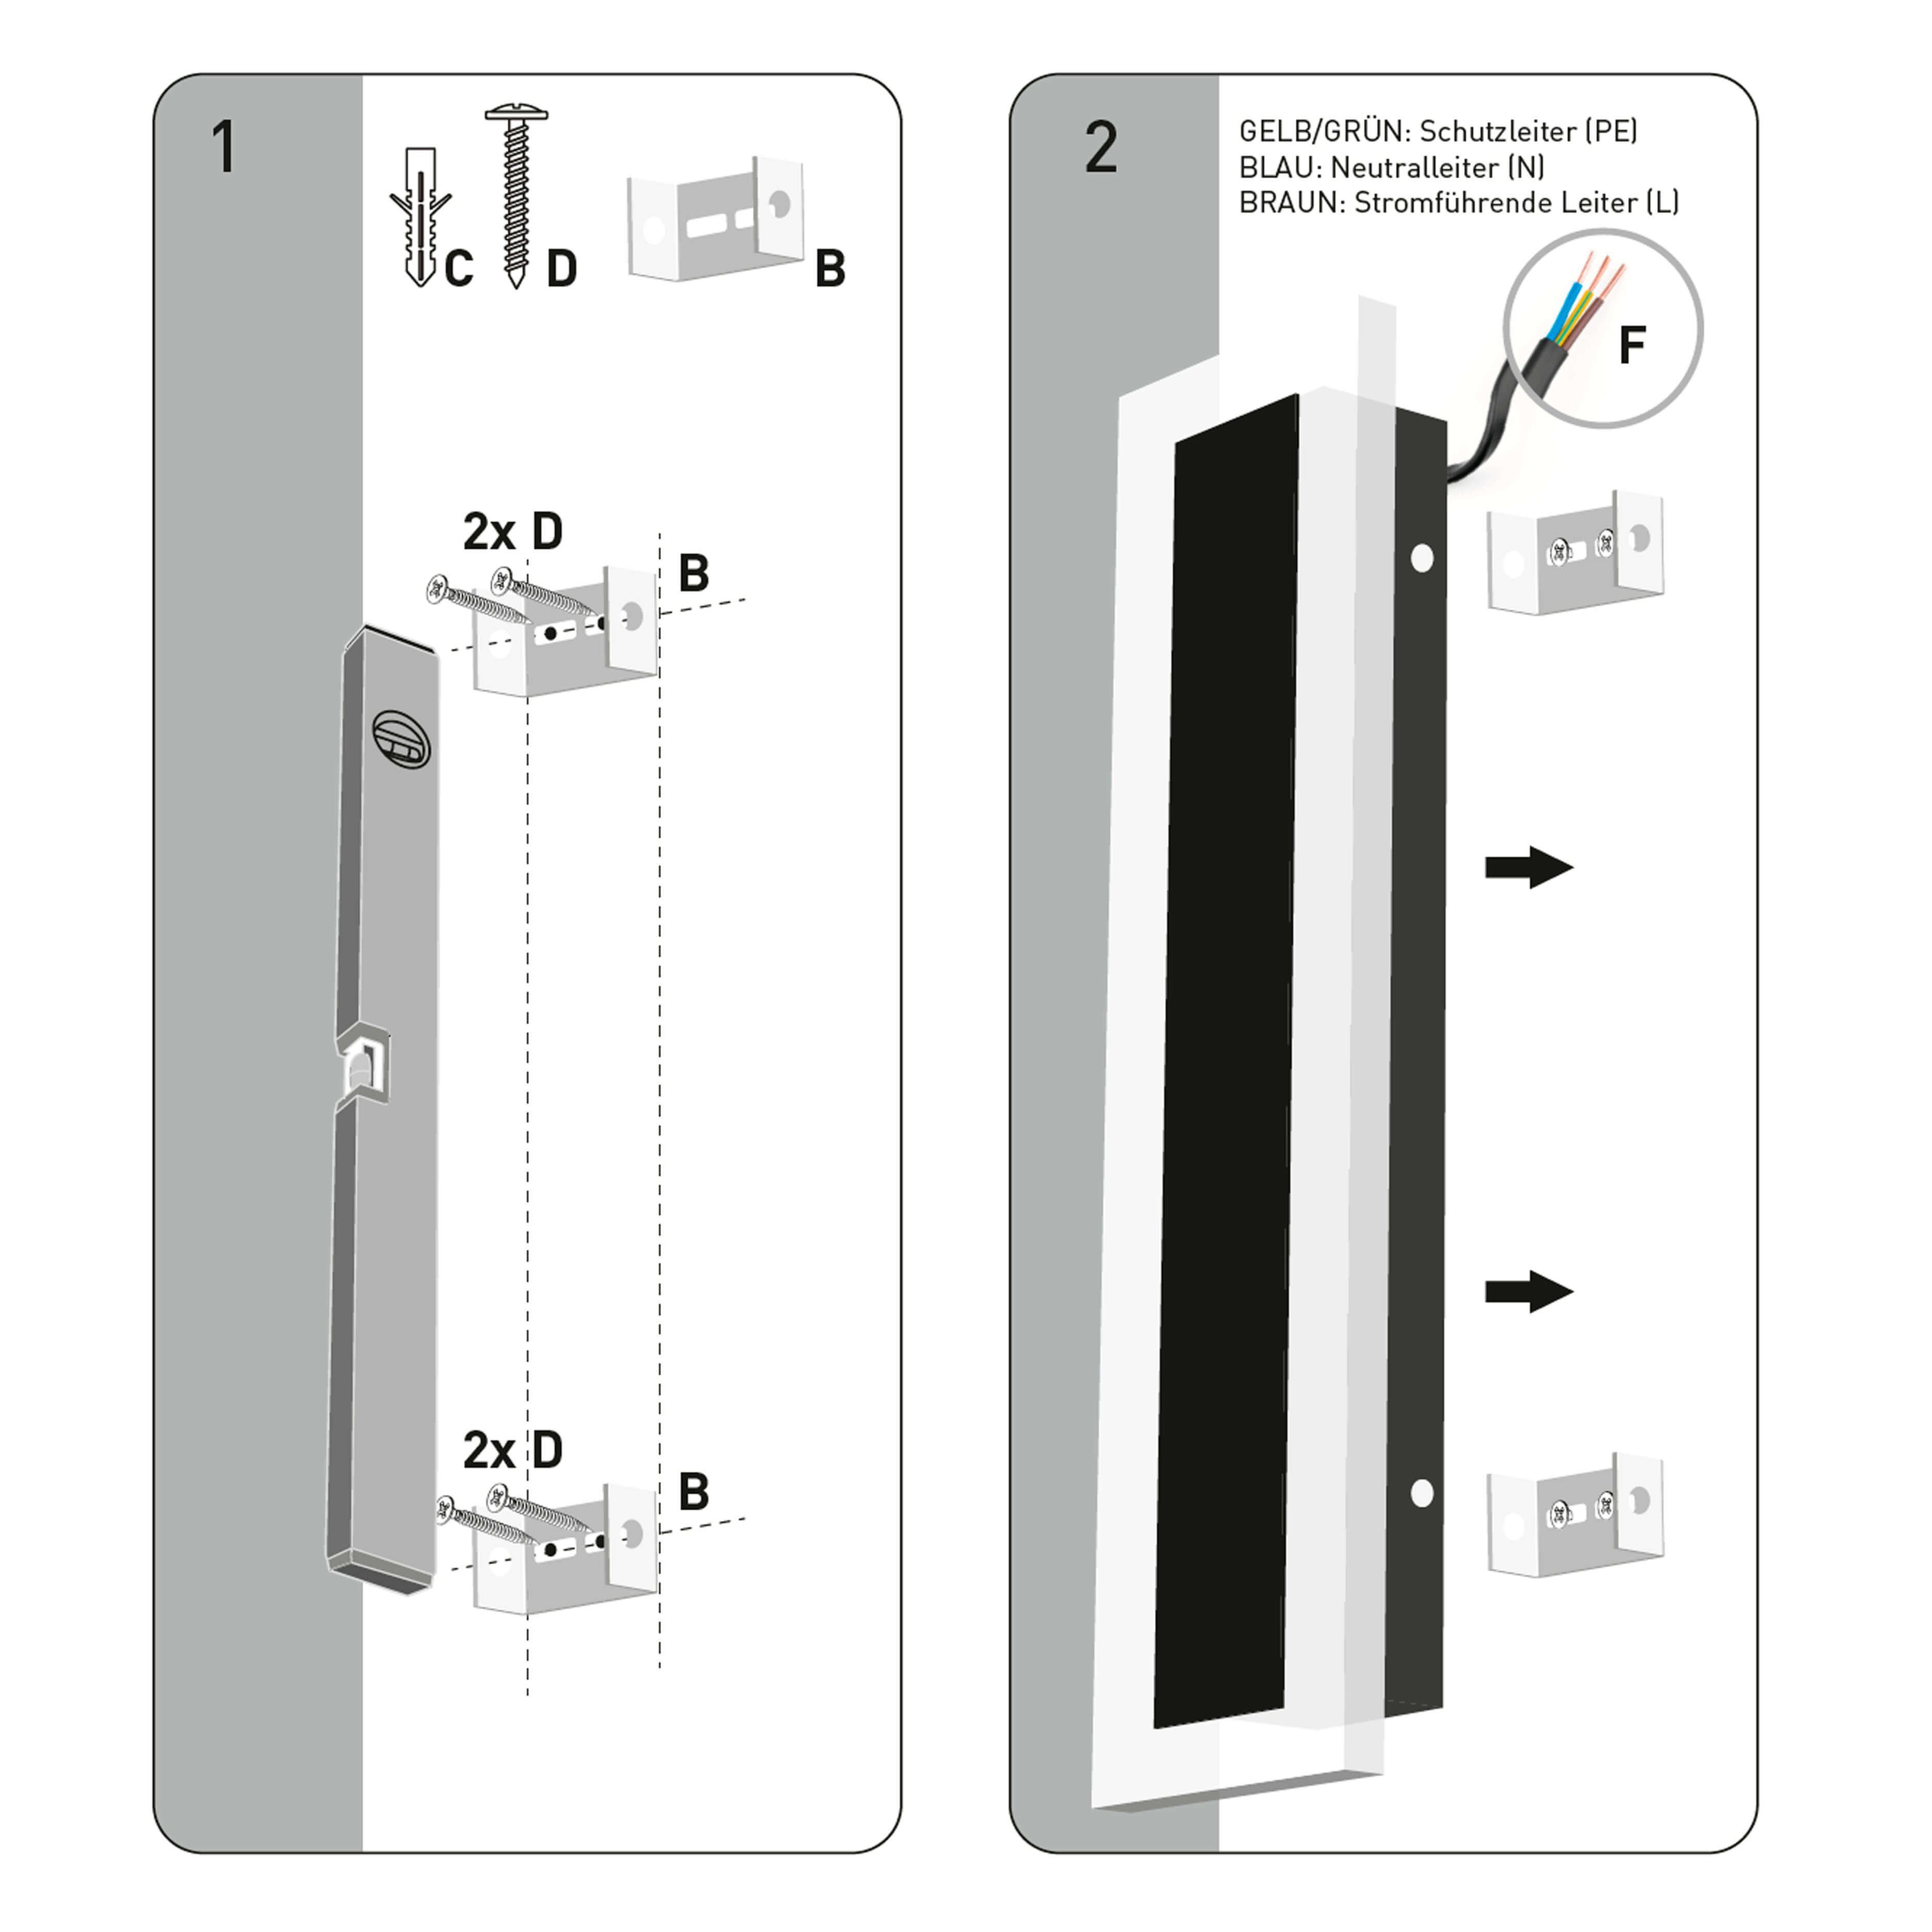 X4-LIFE LED Panel Wandleuchte 100cm 32W RGB Kaltweiß für Innen und Außen IP65 Fernbedienung